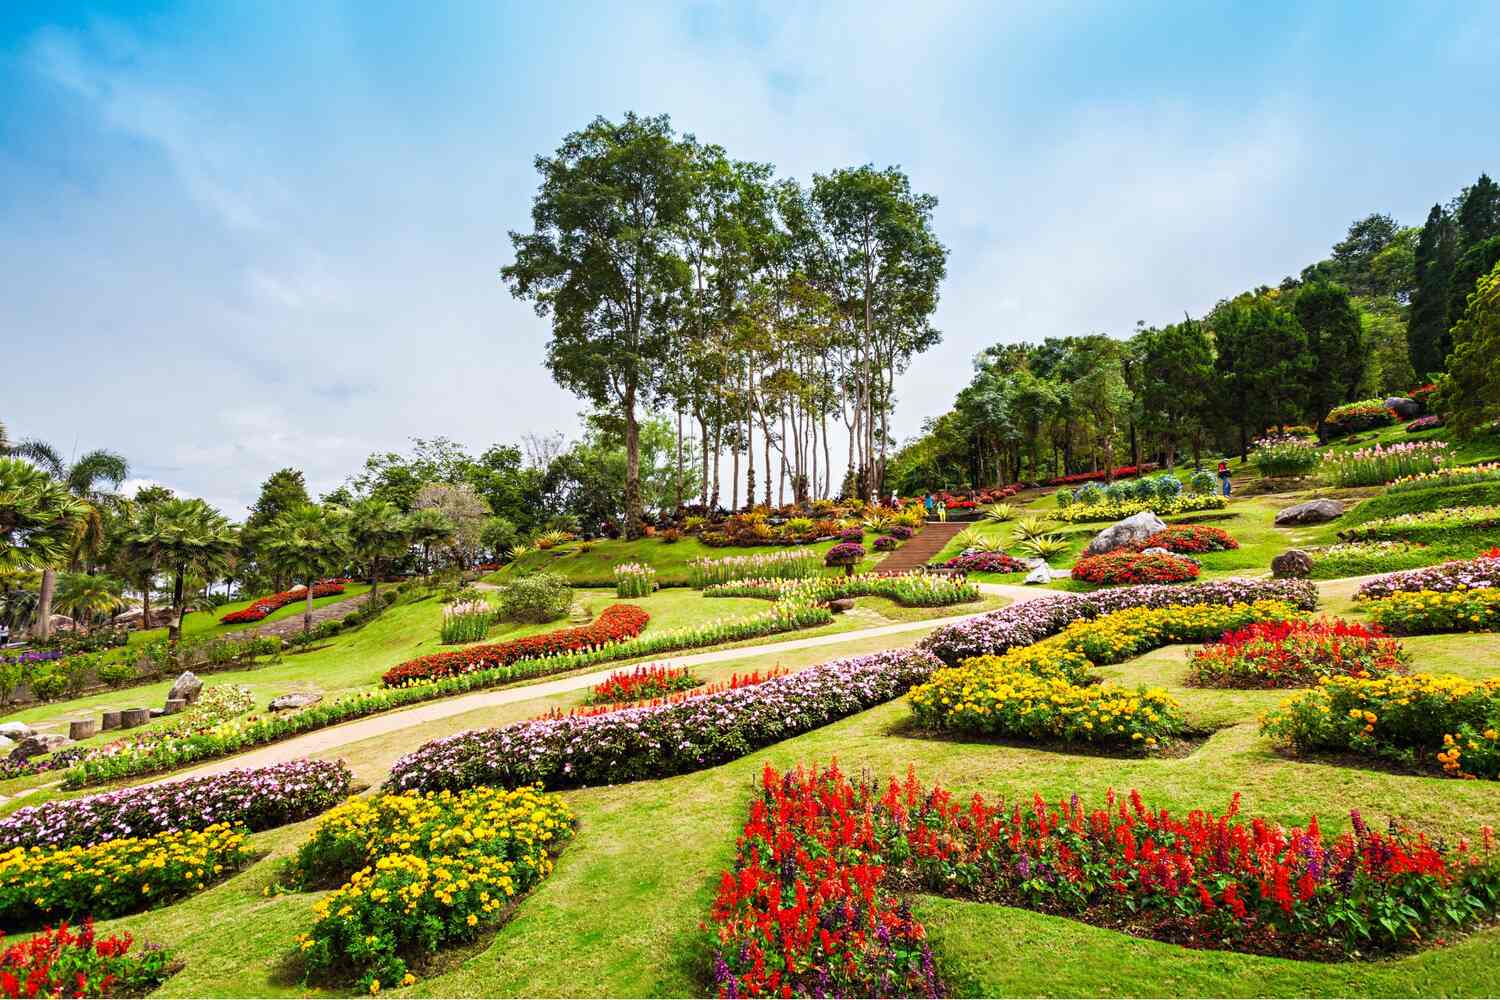 Gardens-at-the-Doi-Tung-Royal-Villa-in-Chiang-Rai Is Chiang Rai Worth Visiting? Yes